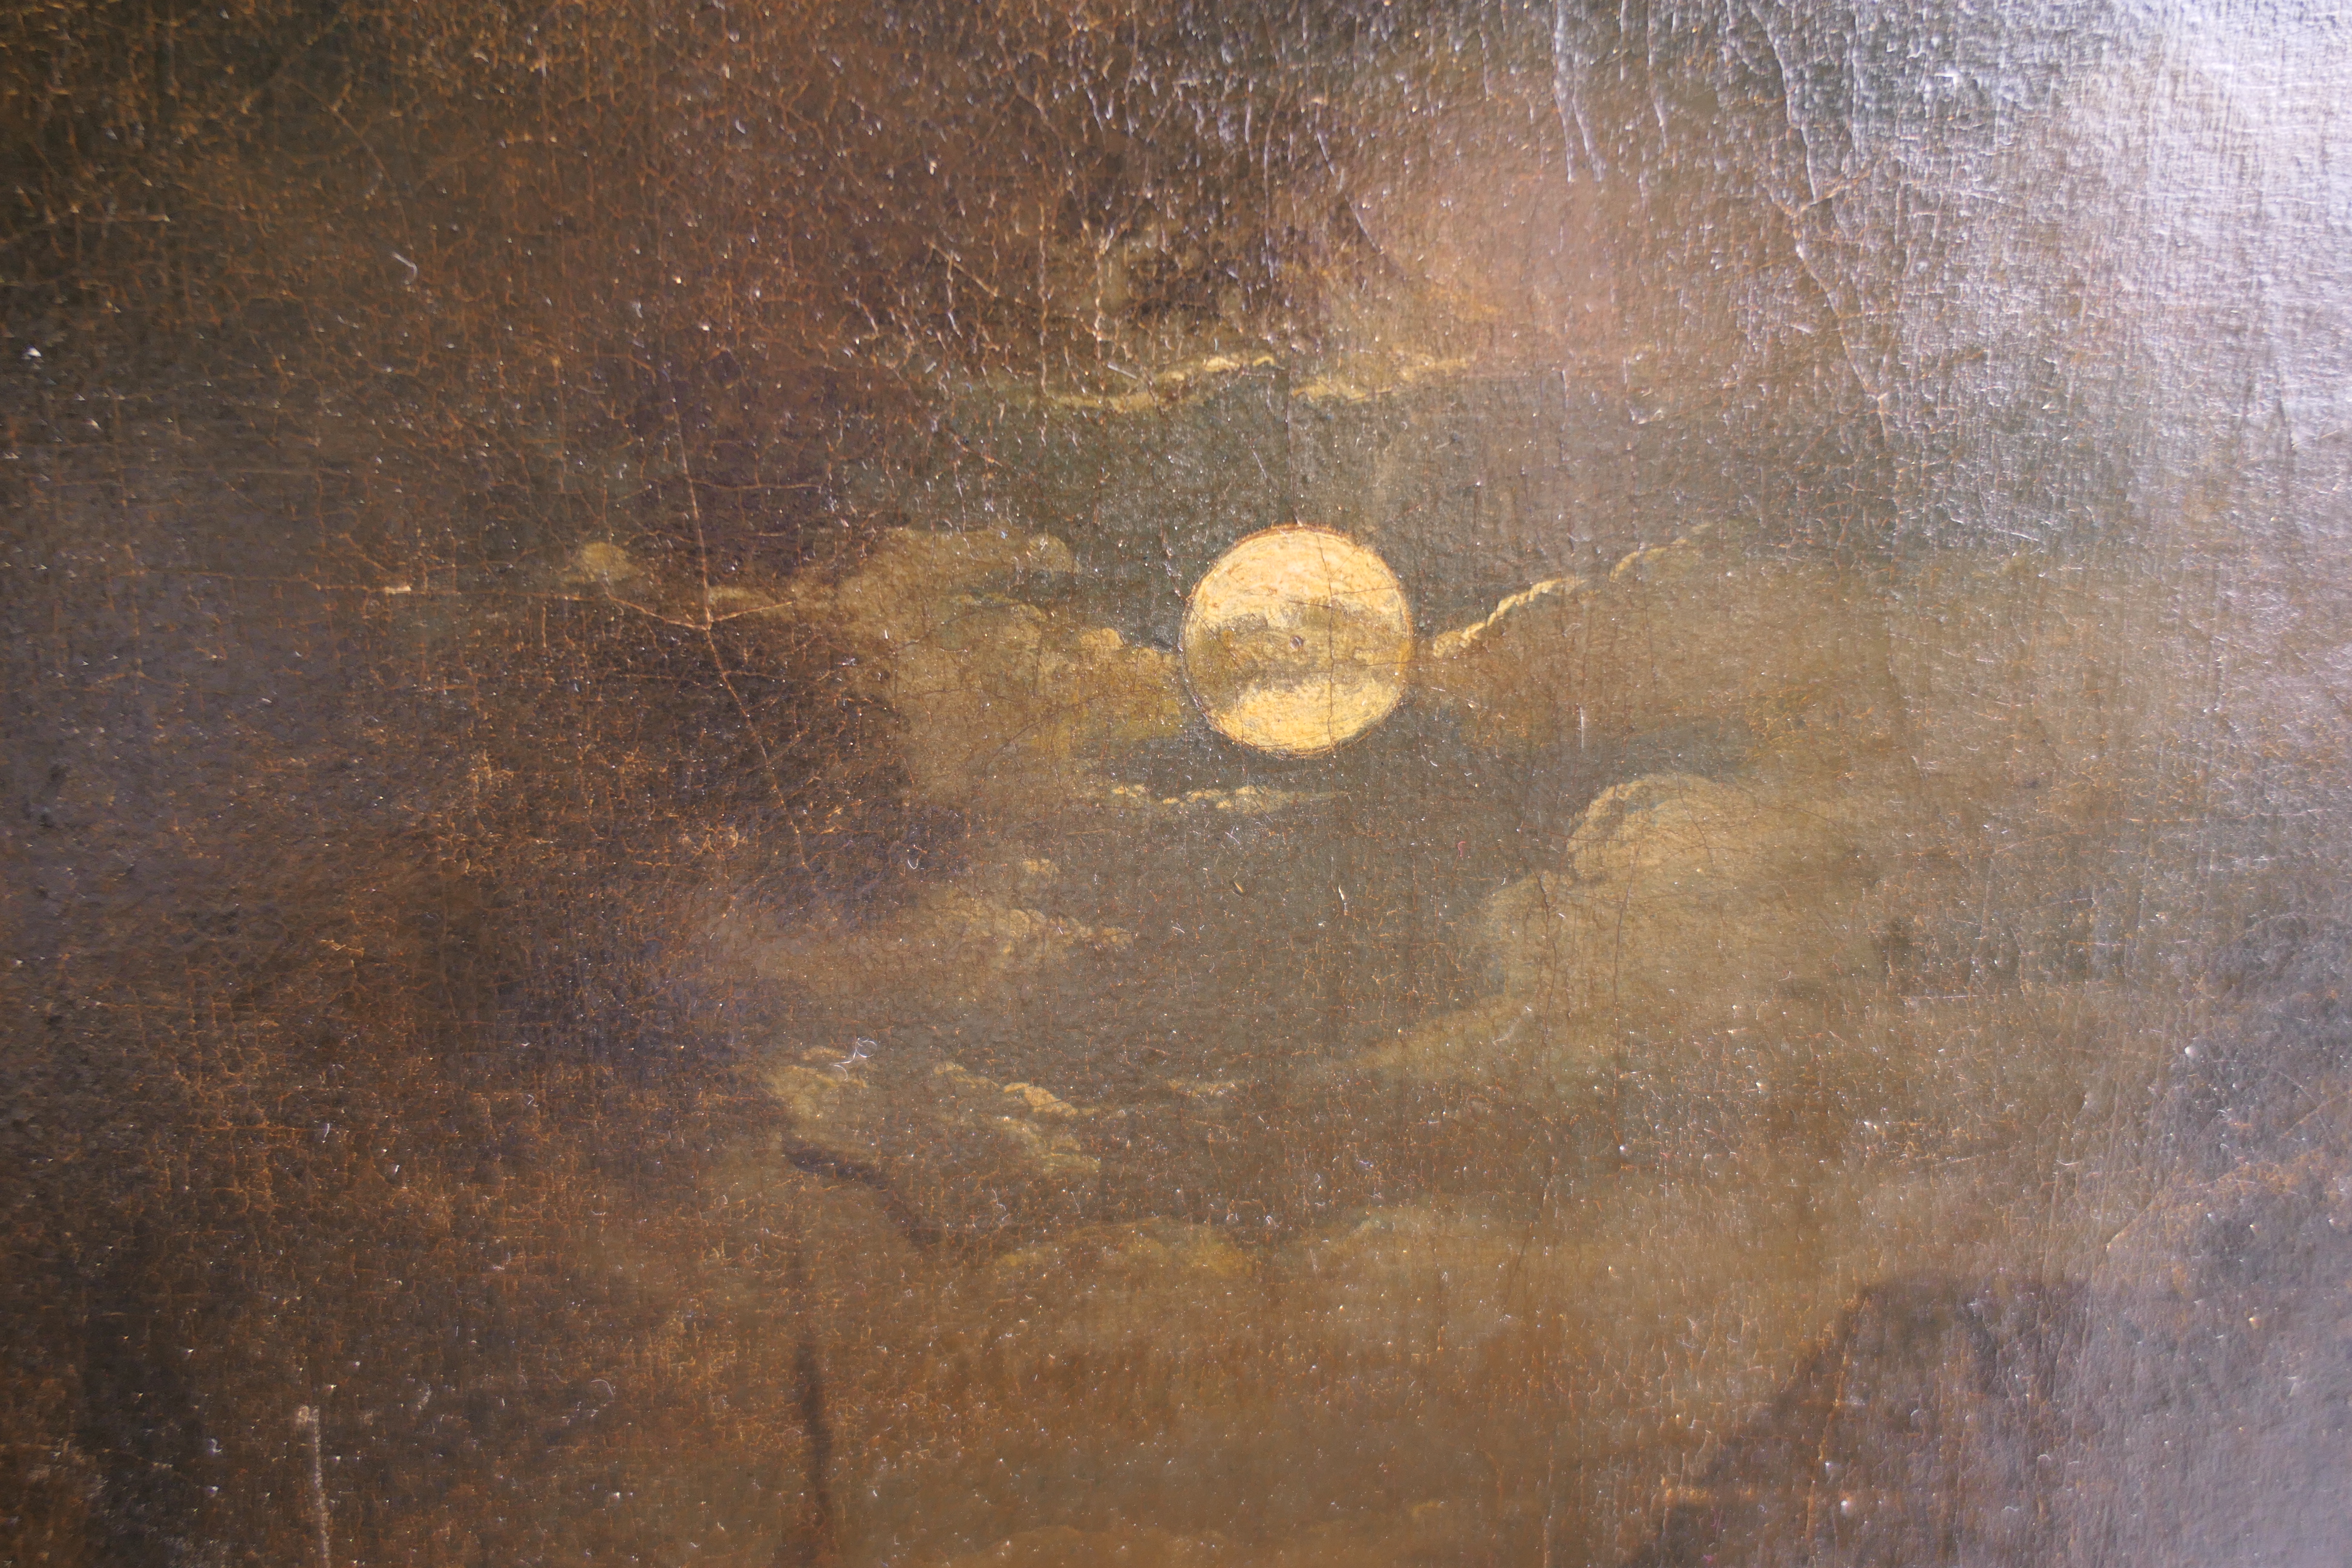 Follower of SEBASTIAN PETHER, Moonlight Scene, oil on canvas, unframed. 42.5 x 34 cm. - Image 10 of 12